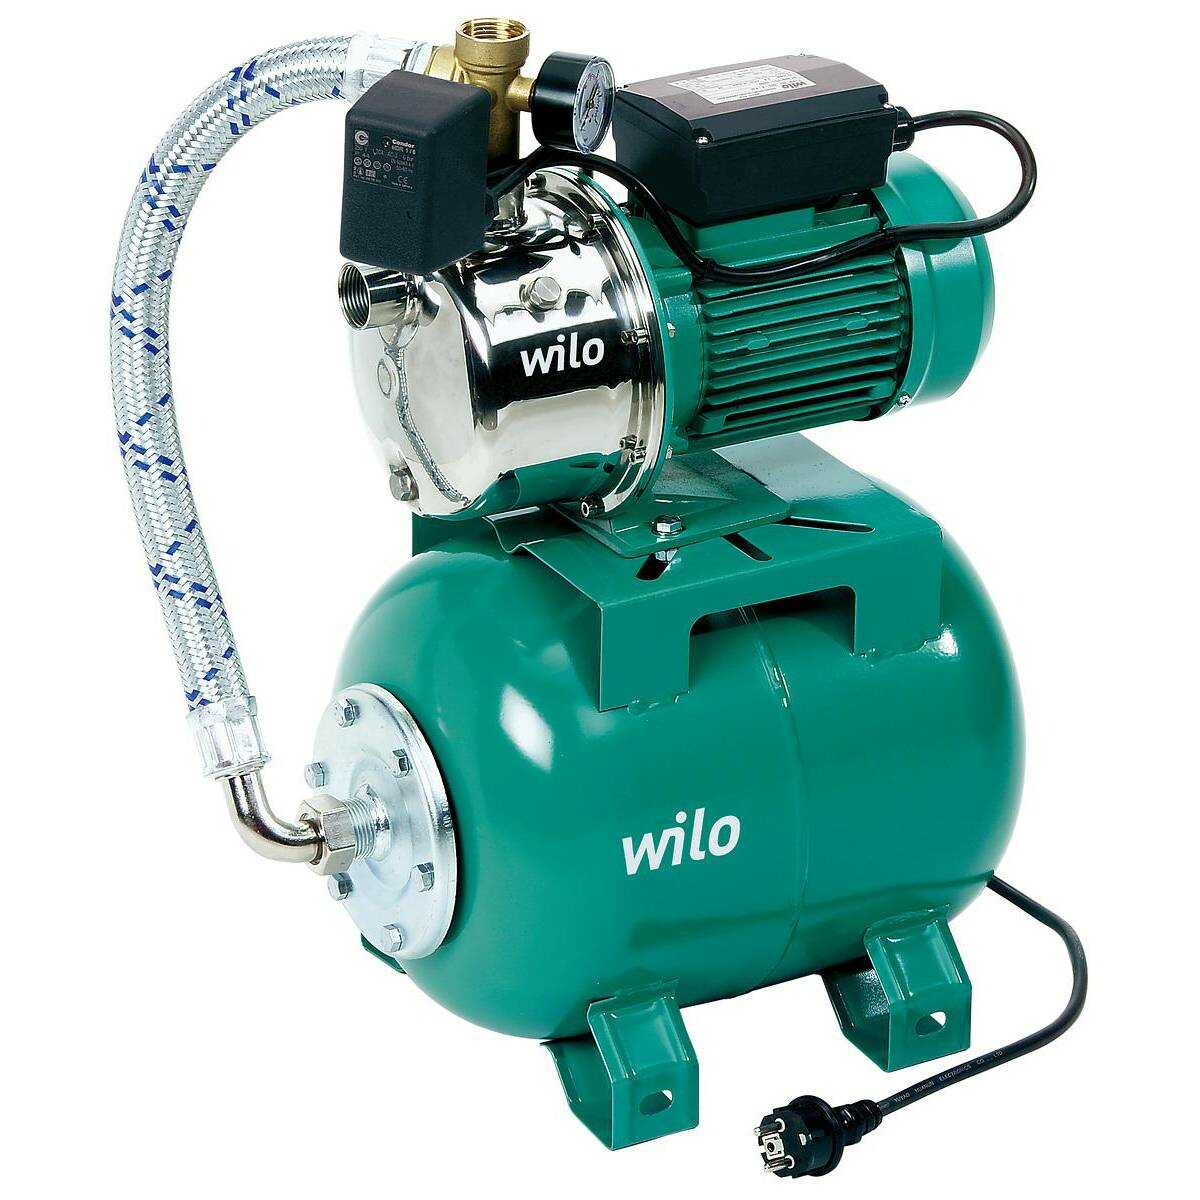 Système de distribution d'eau Wilo-HWJ-203-EM-2 (2549380)